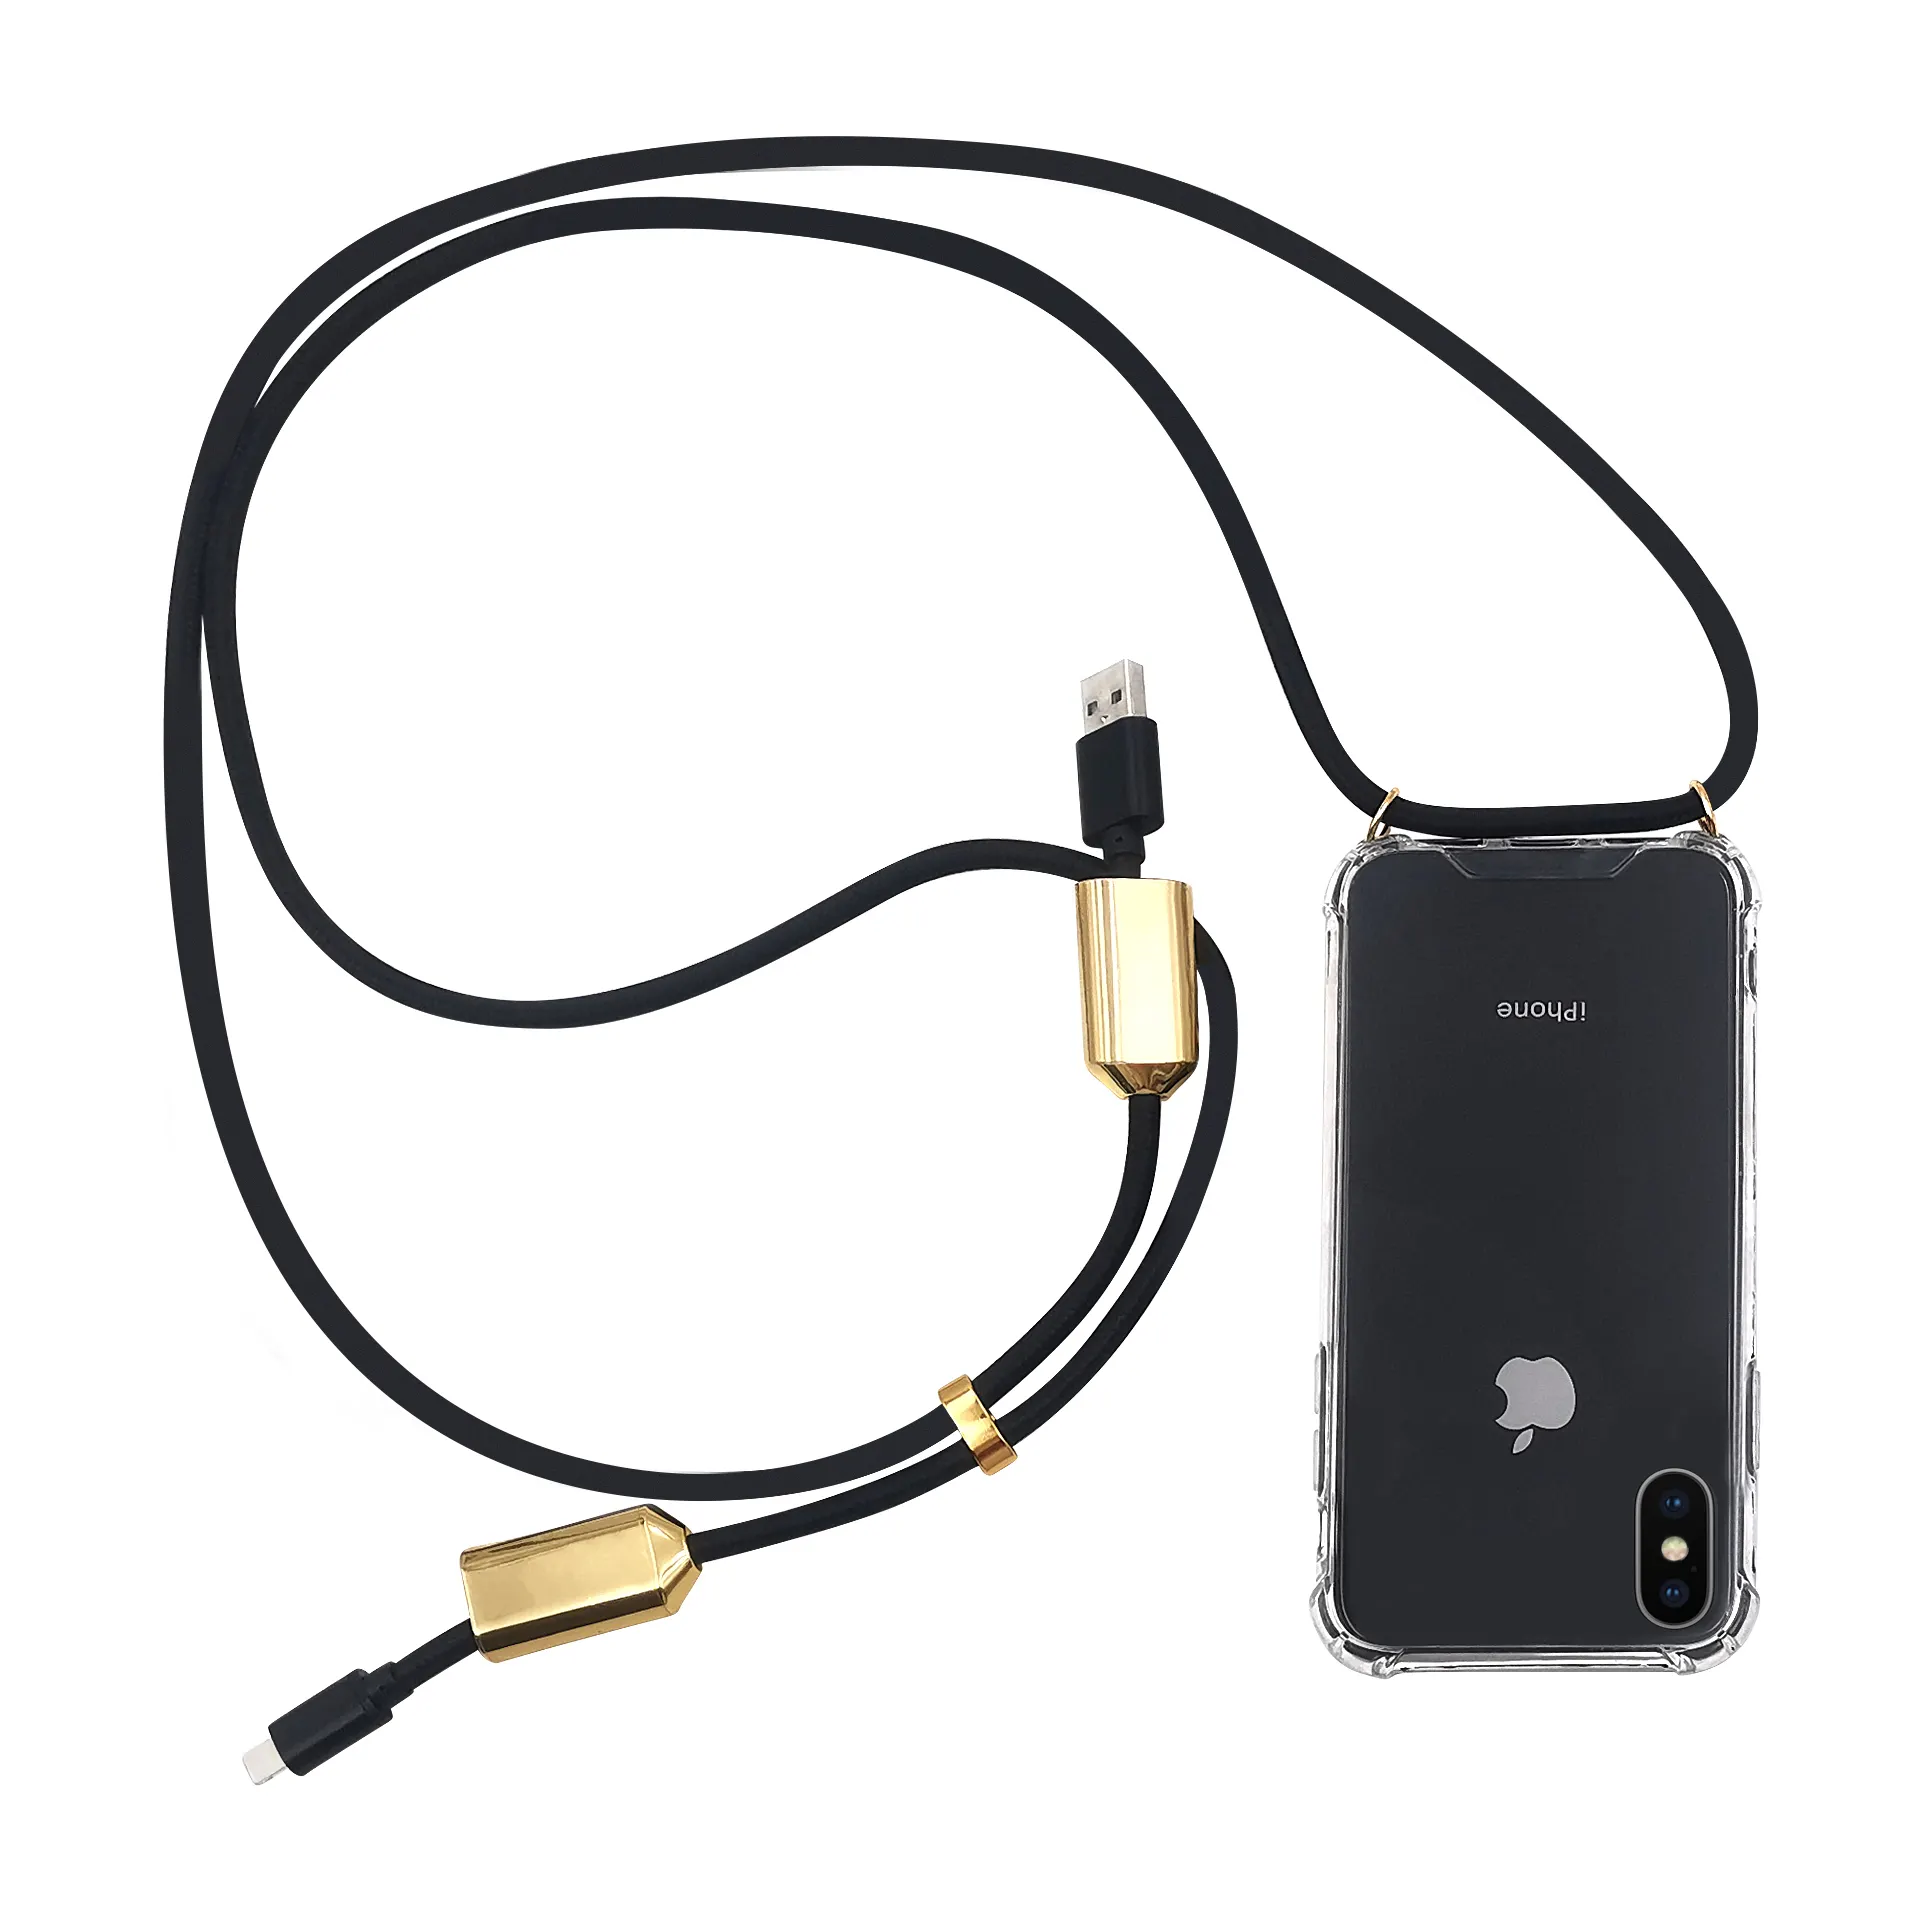 TENCHEN Capa de carregamento para celular com cabo de carregamento USB, capa de carregamento para celular, cordão de dados, capa transversal para iPhone, venda imperdível